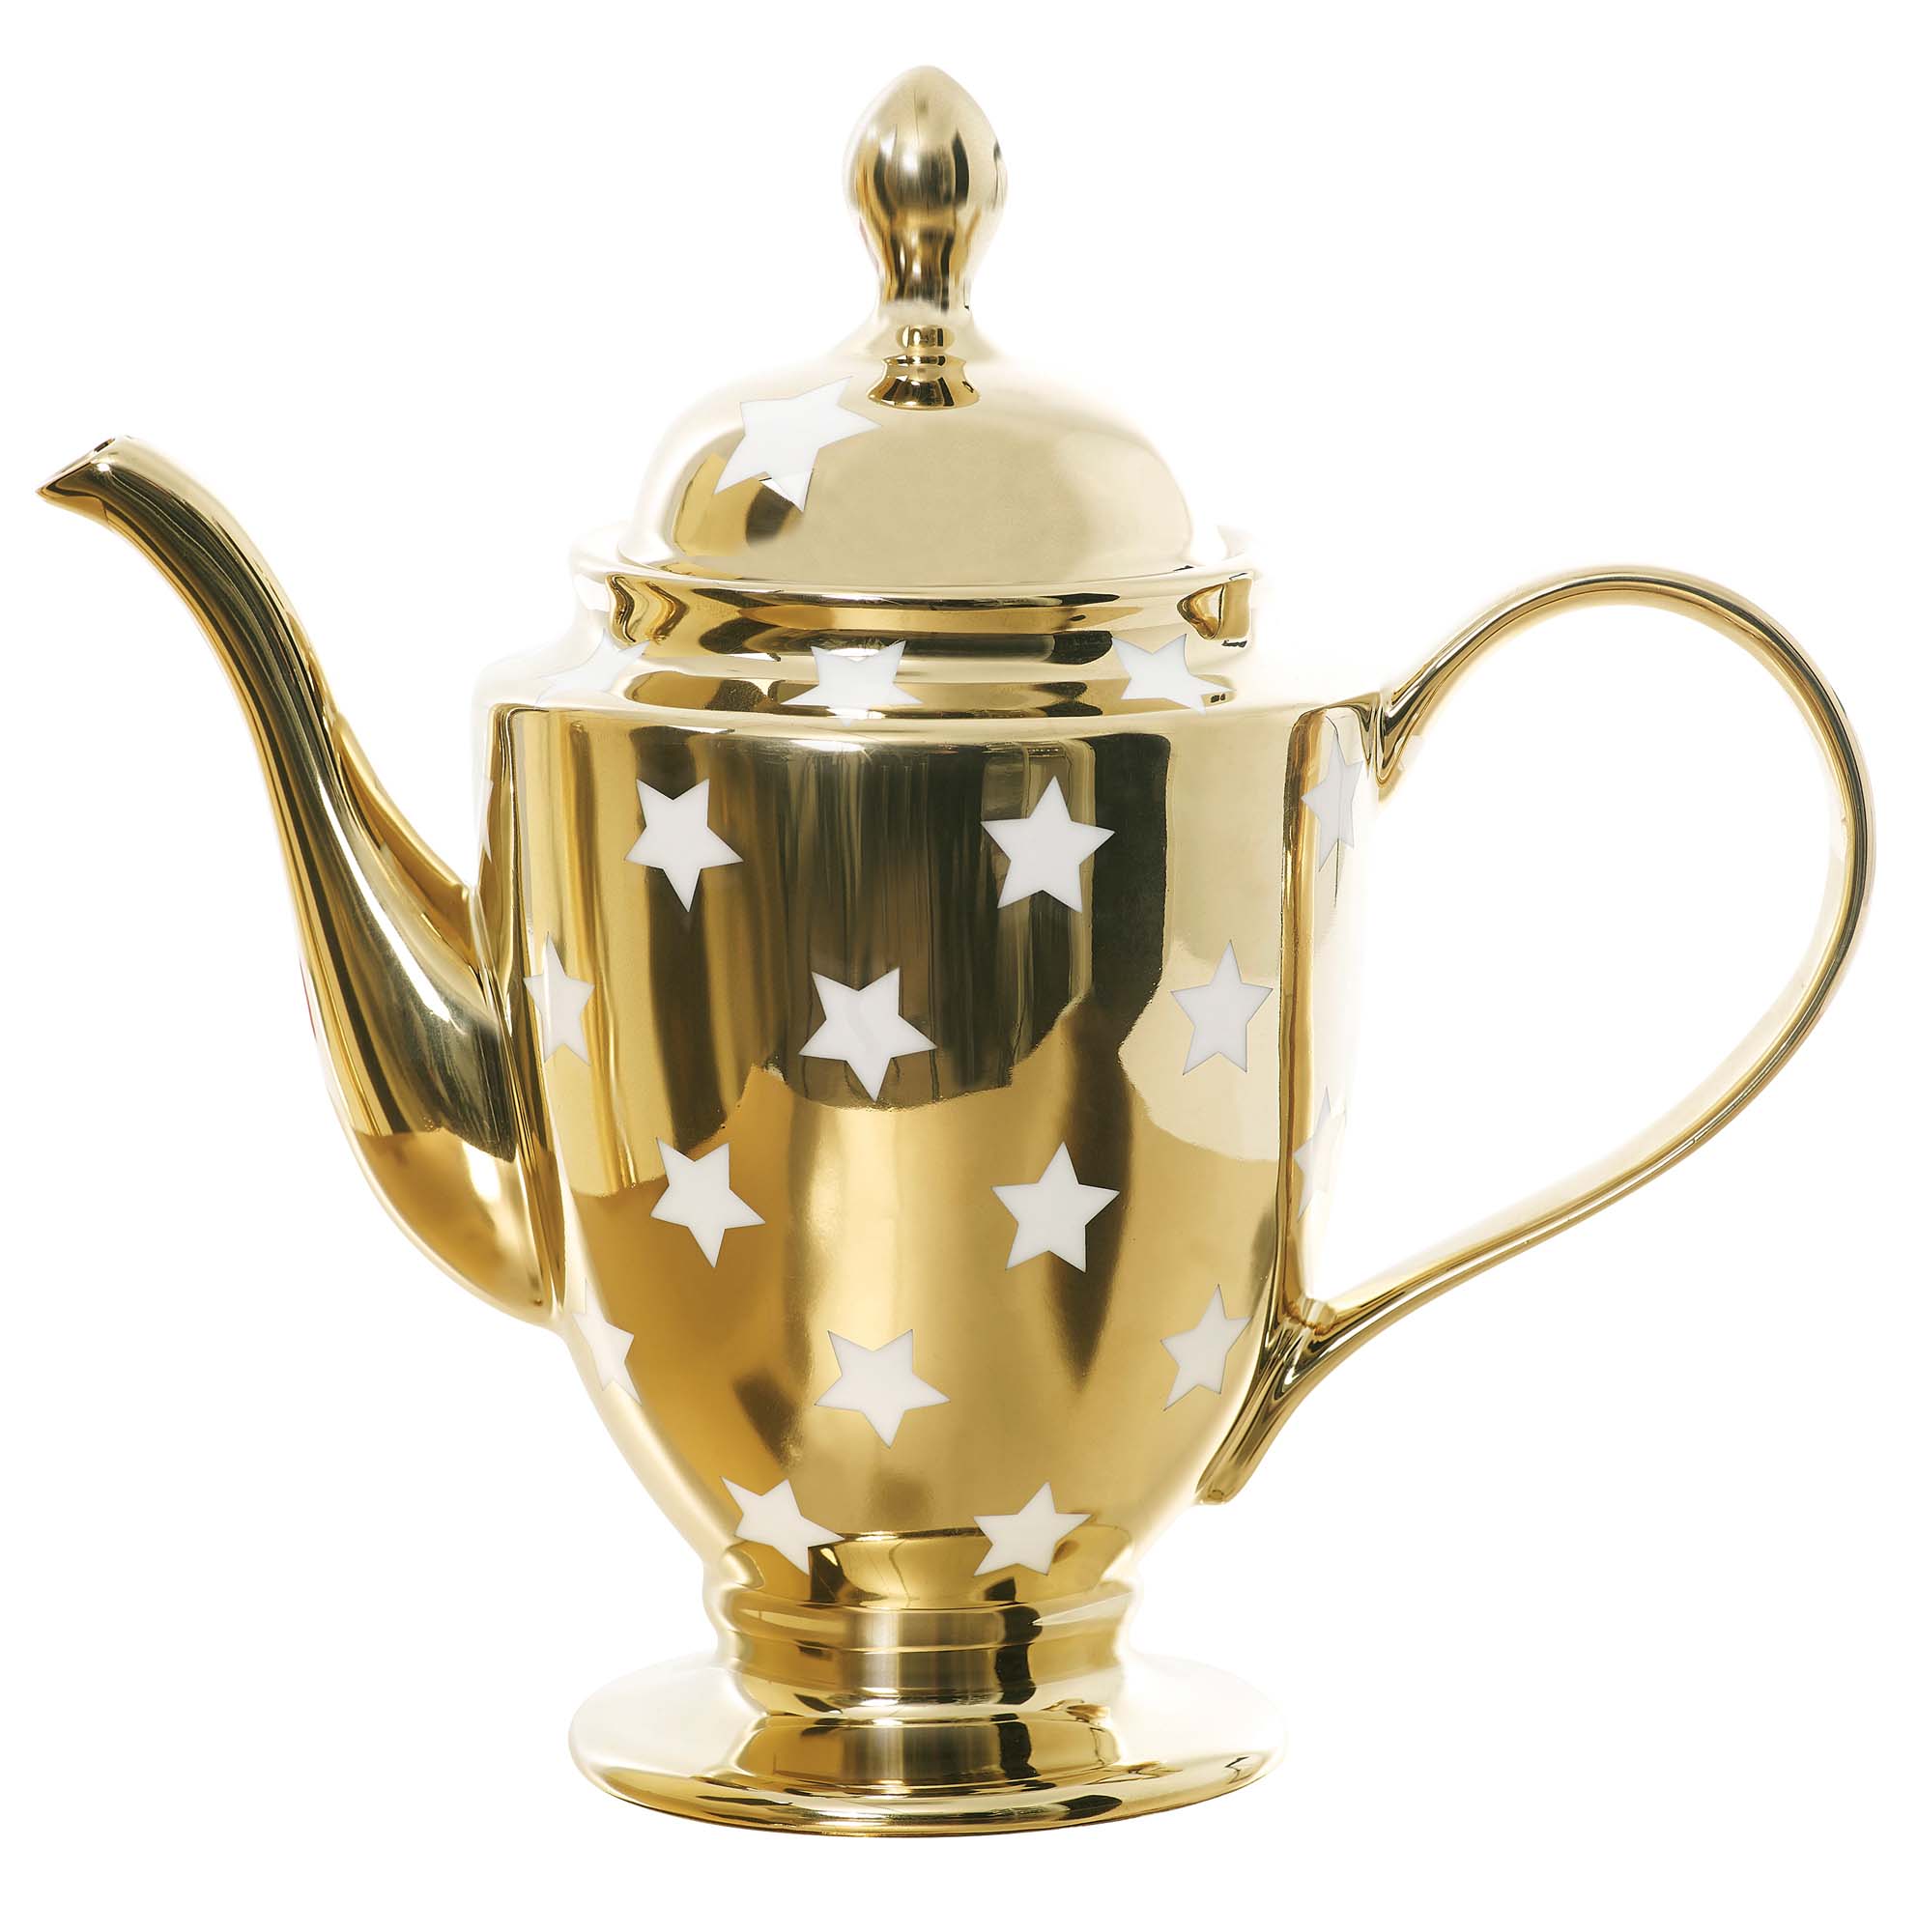 Rockett St George's Gold Star teapot